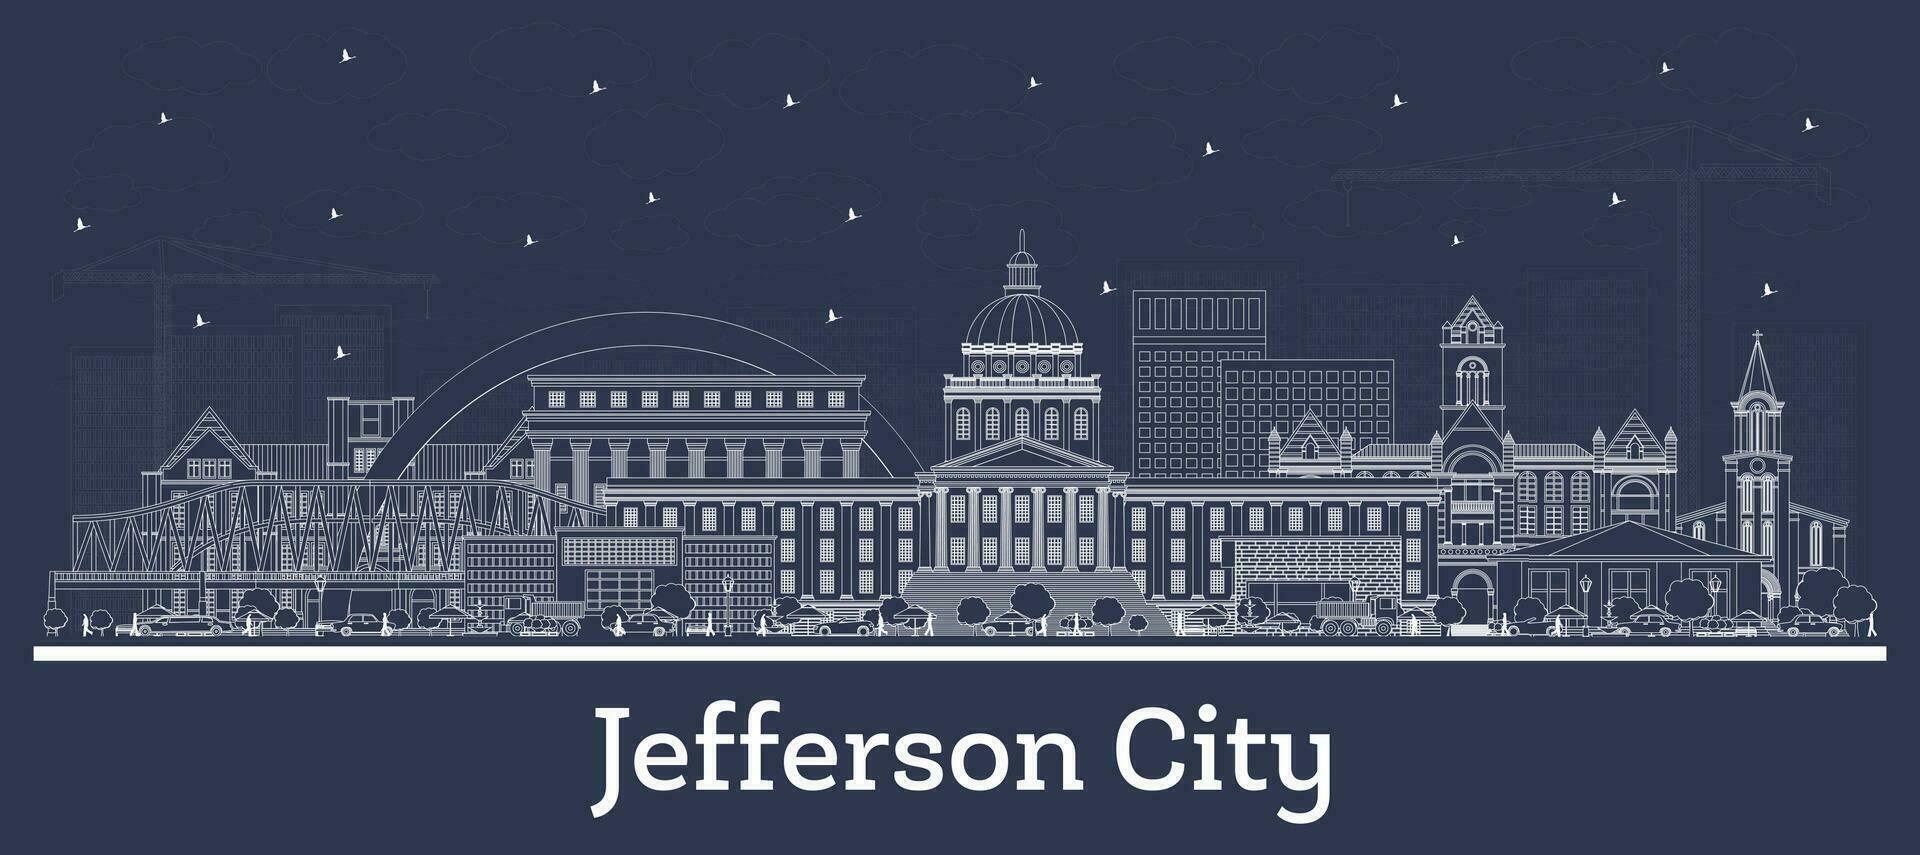 schets Jefferson stad Missouri stad horizon met wit gebouwen. bedrijf reizen en toerisme concept met historisch architectuur. Jefferson stad Verenigde Staten van Amerika stadsgezicht met oriëntatiepunten. vector